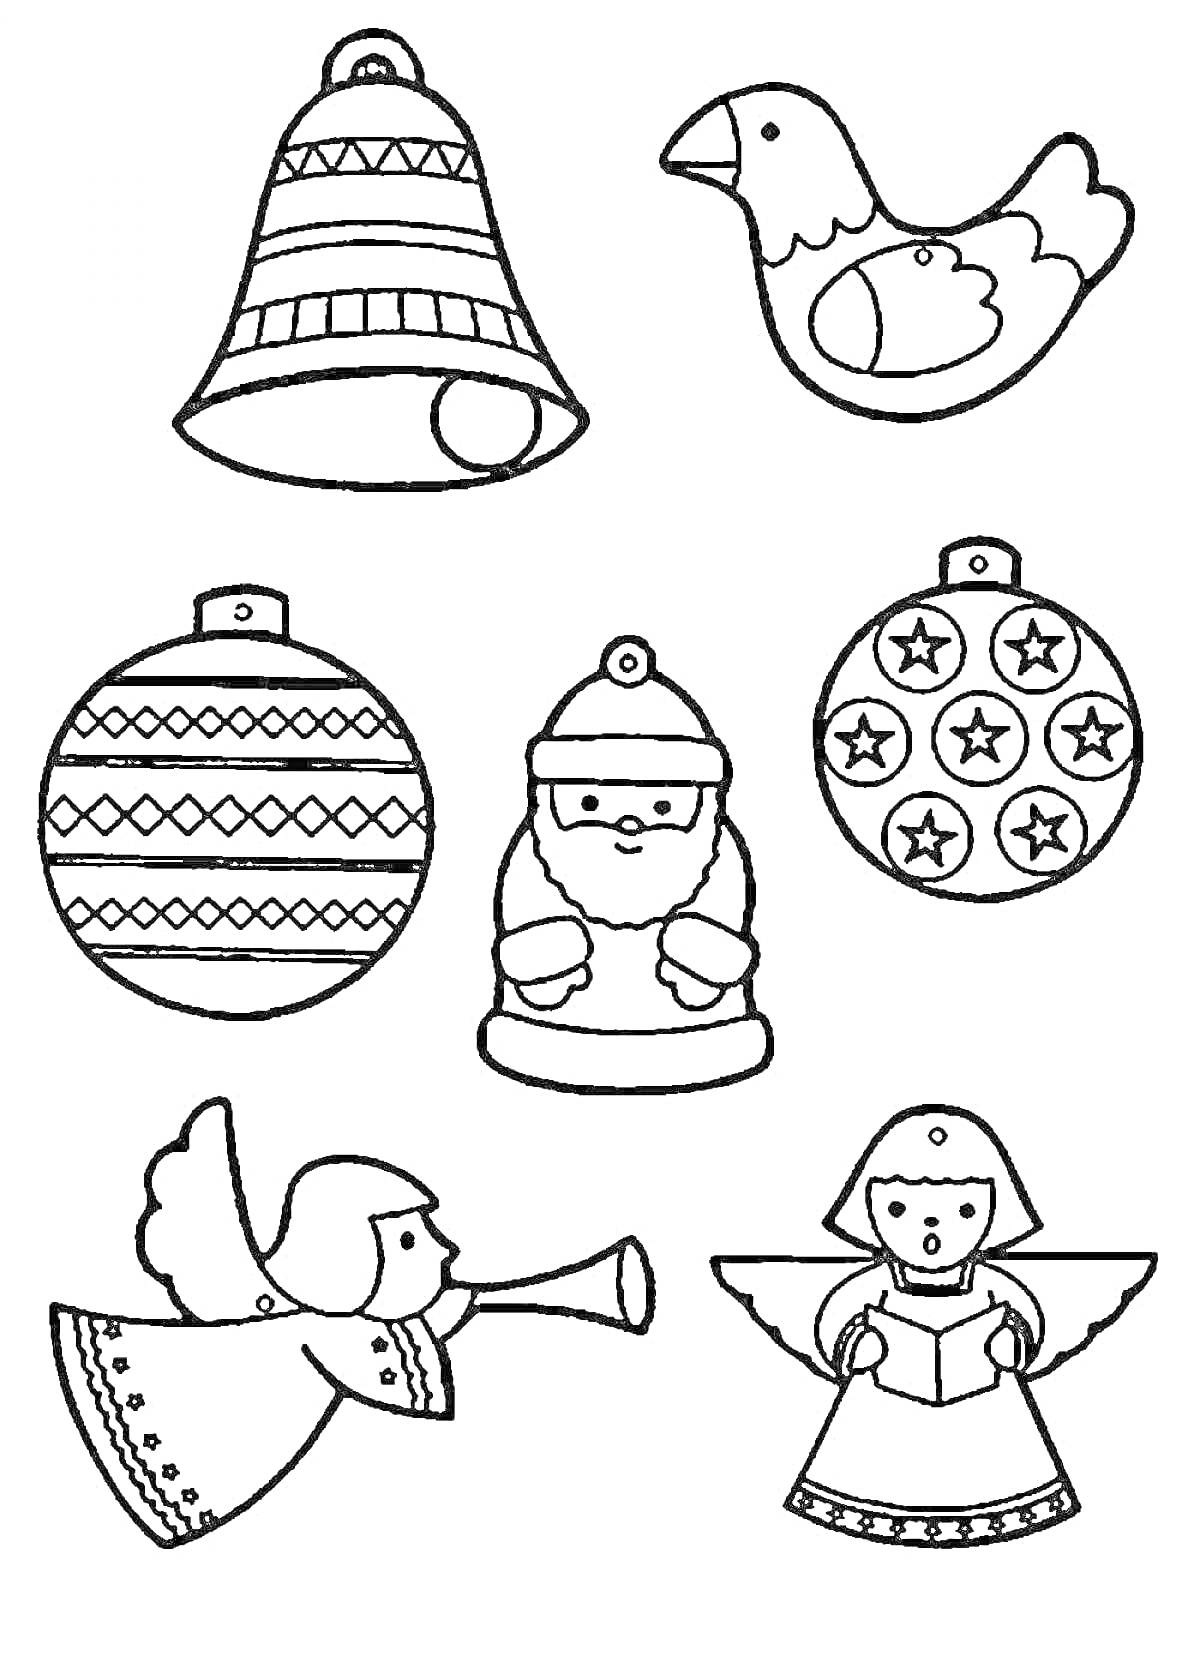 Раскраска Колокольчик, птица, елочный шарик с узором, Санта Клаус, елочный шарик со звездами, ангел с трубой, ангел с книгой